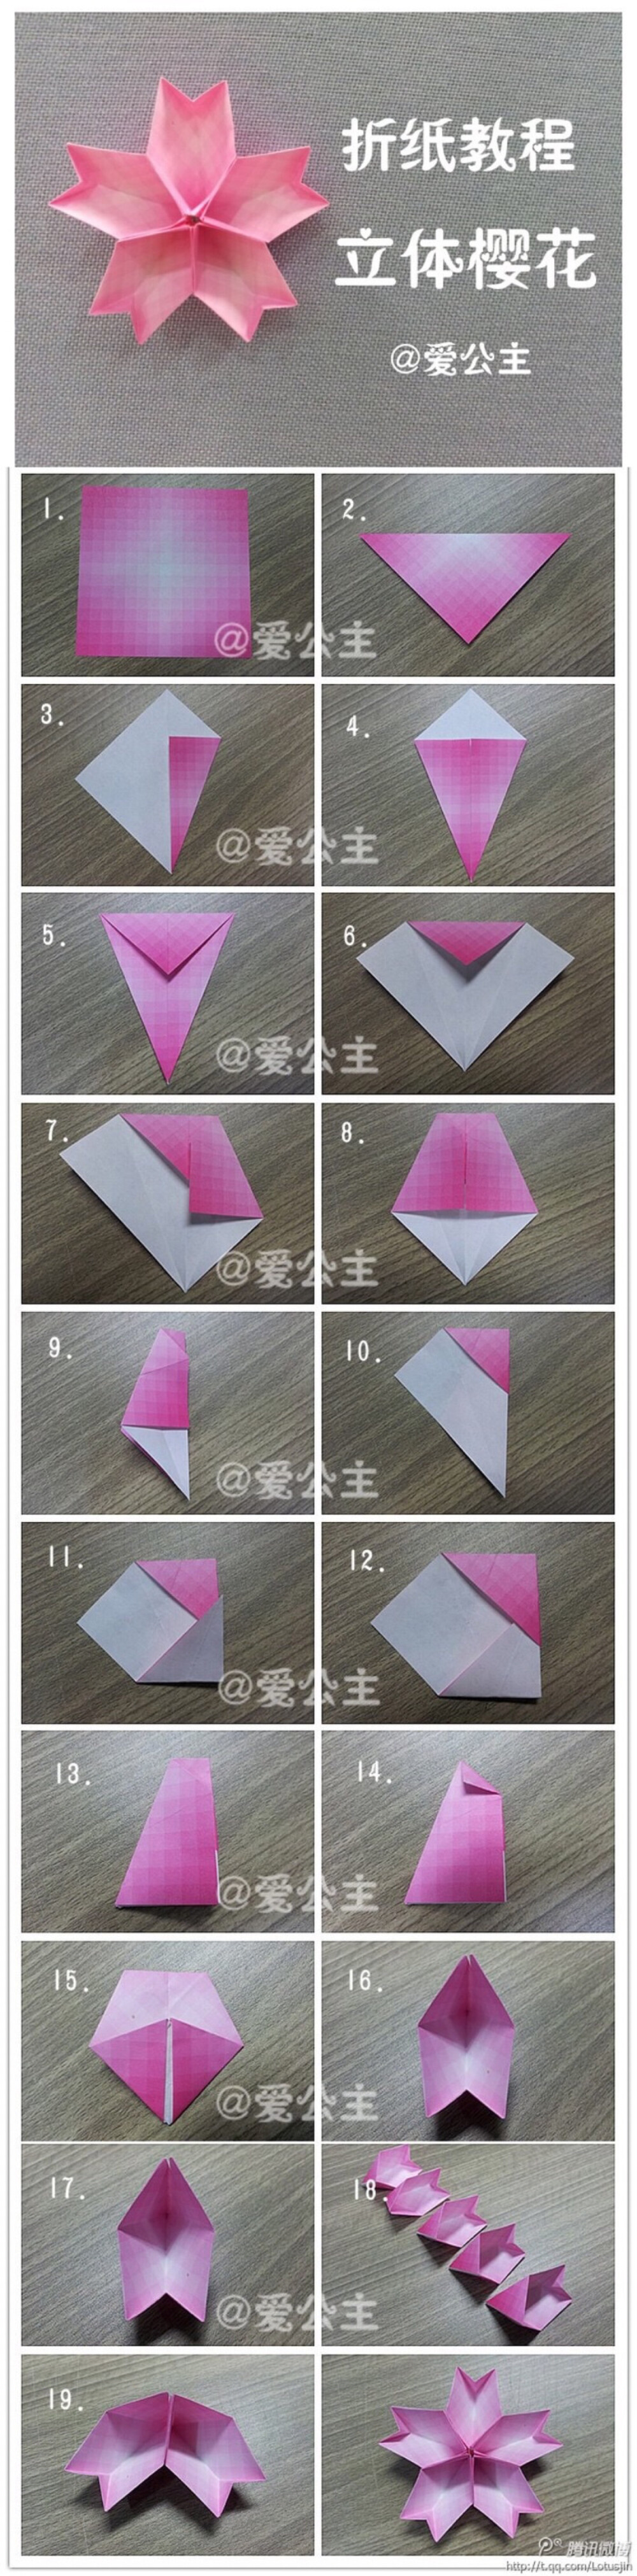 樱花平面折纸图片